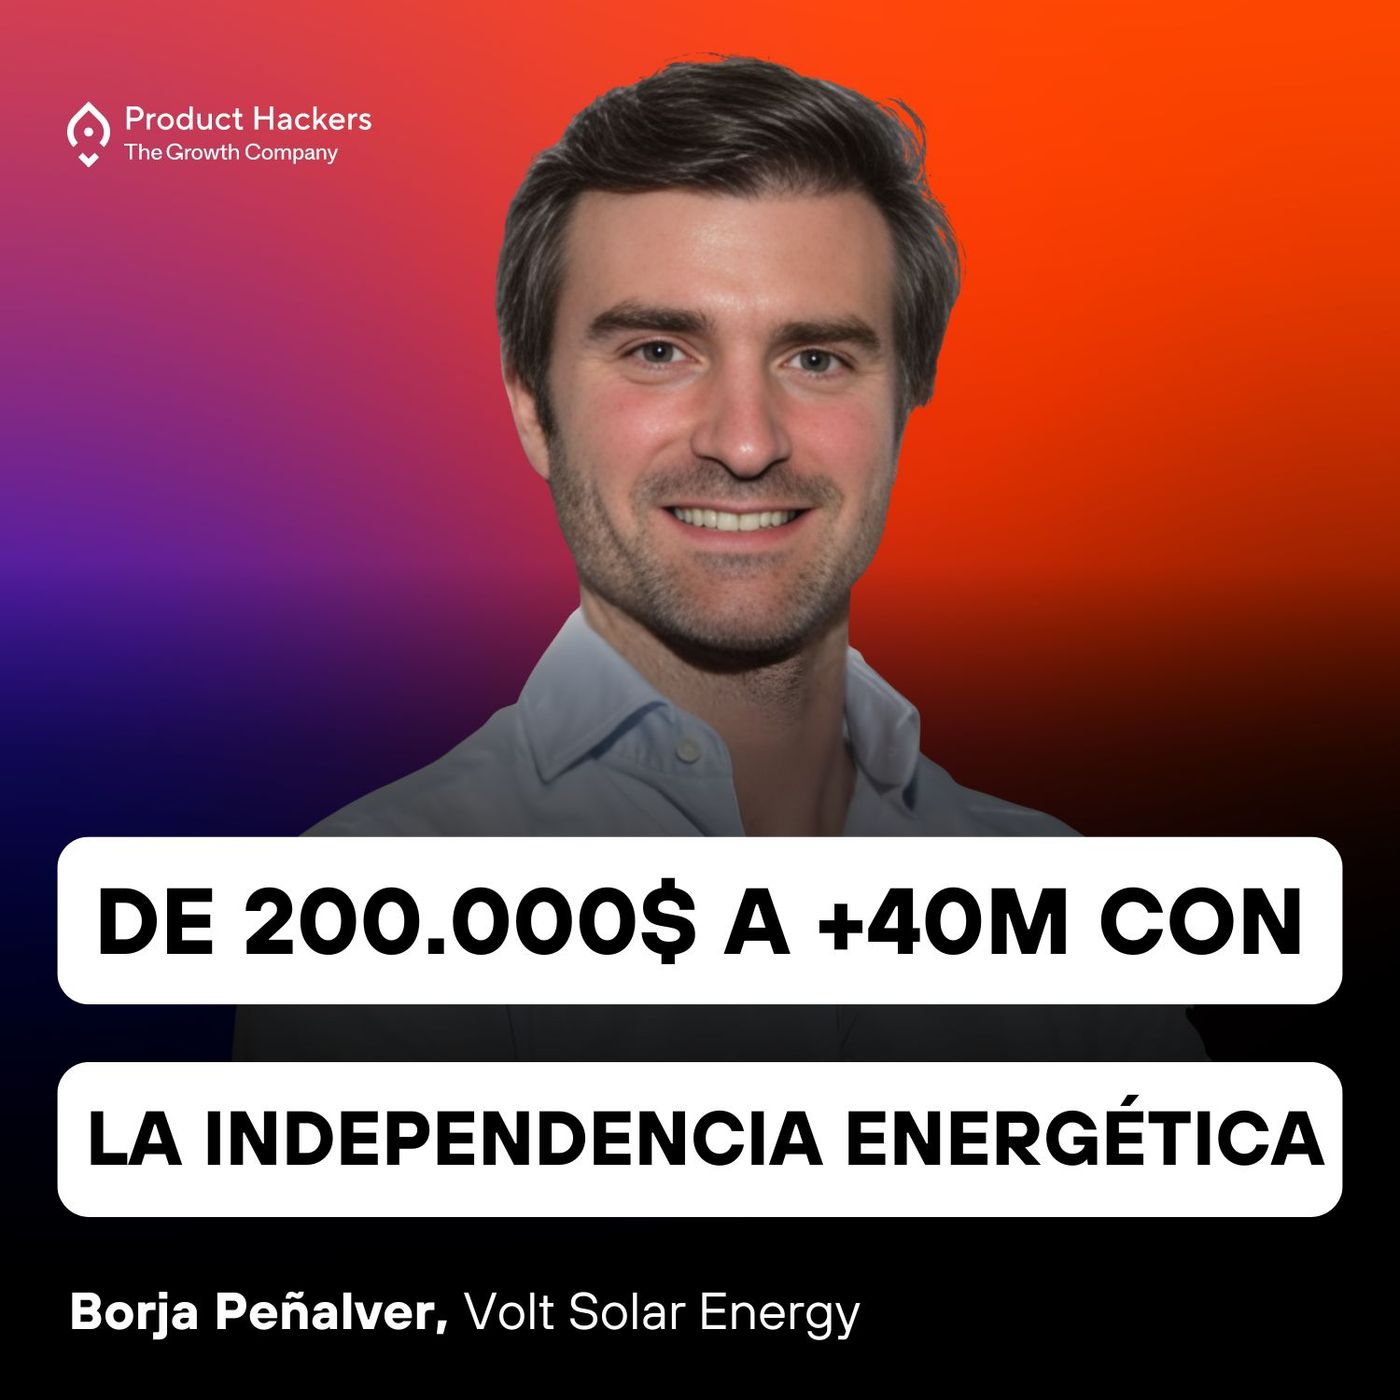 De 200.000$ a +40M revolucionando la independencia energética con Borja Peñalver de Volt Solar Energy